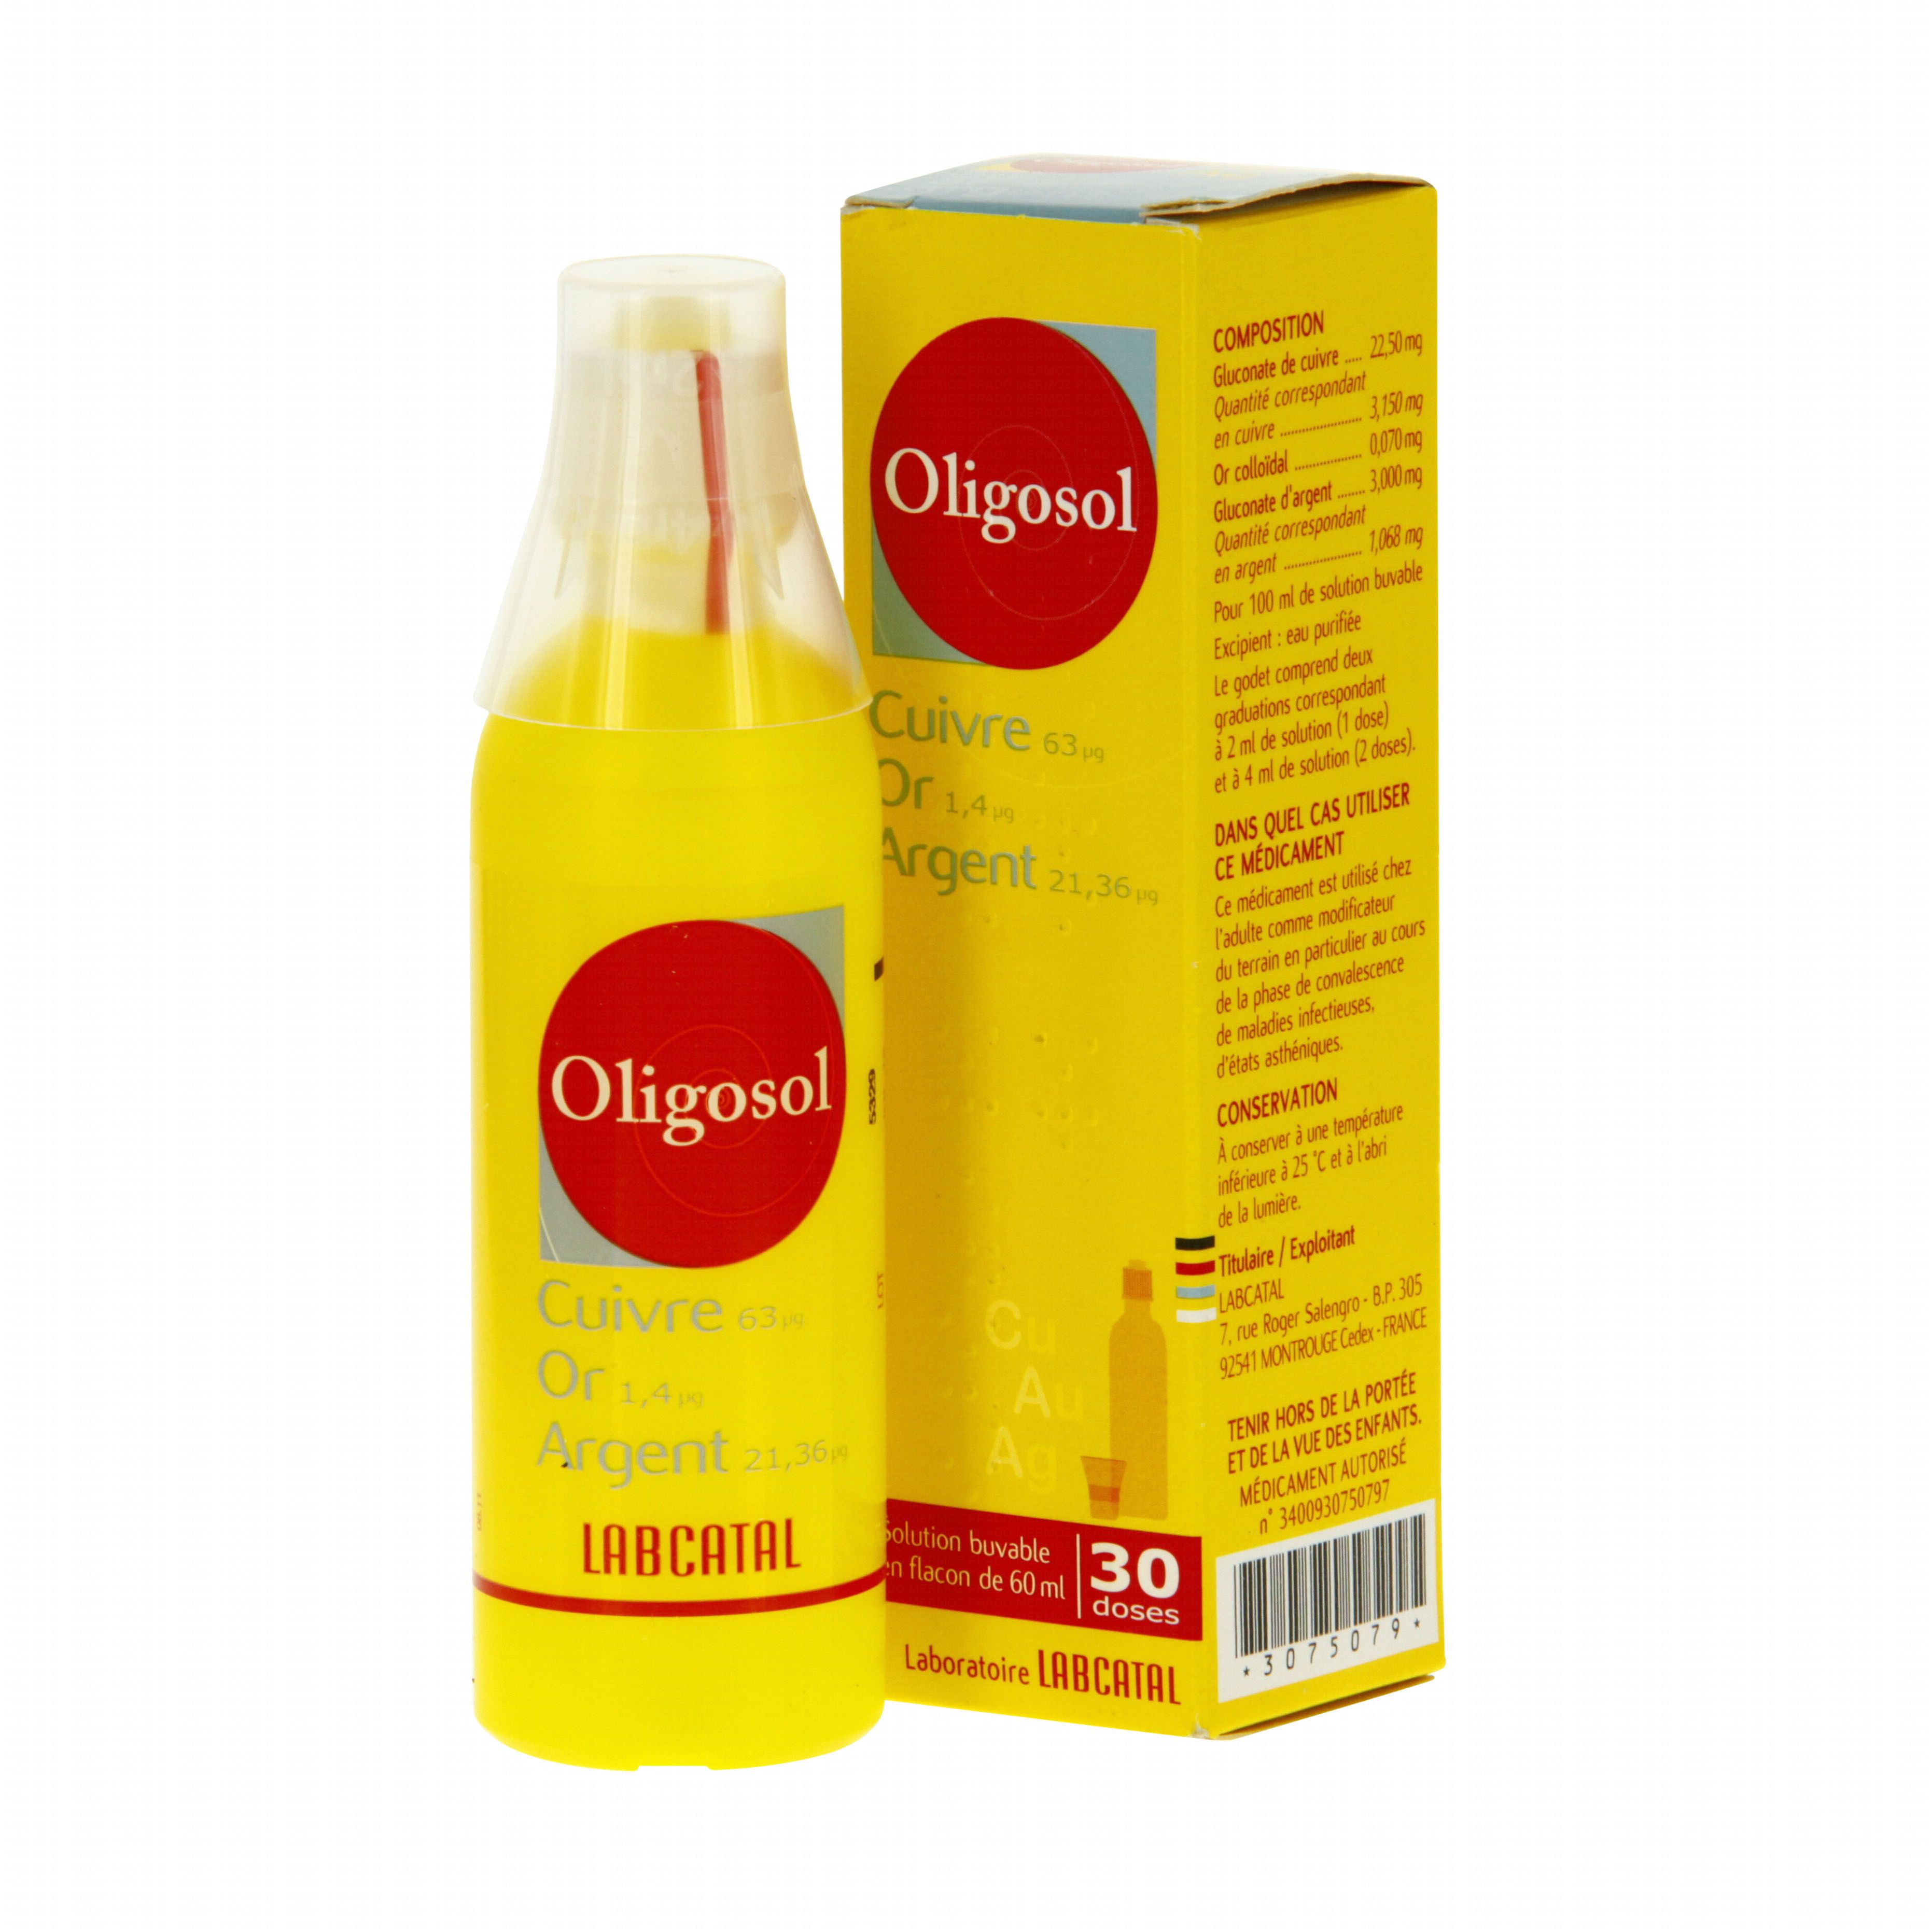 Cuivre-or-argent oligosol flacon de 60 ml Labcatal (médicament conseil ...